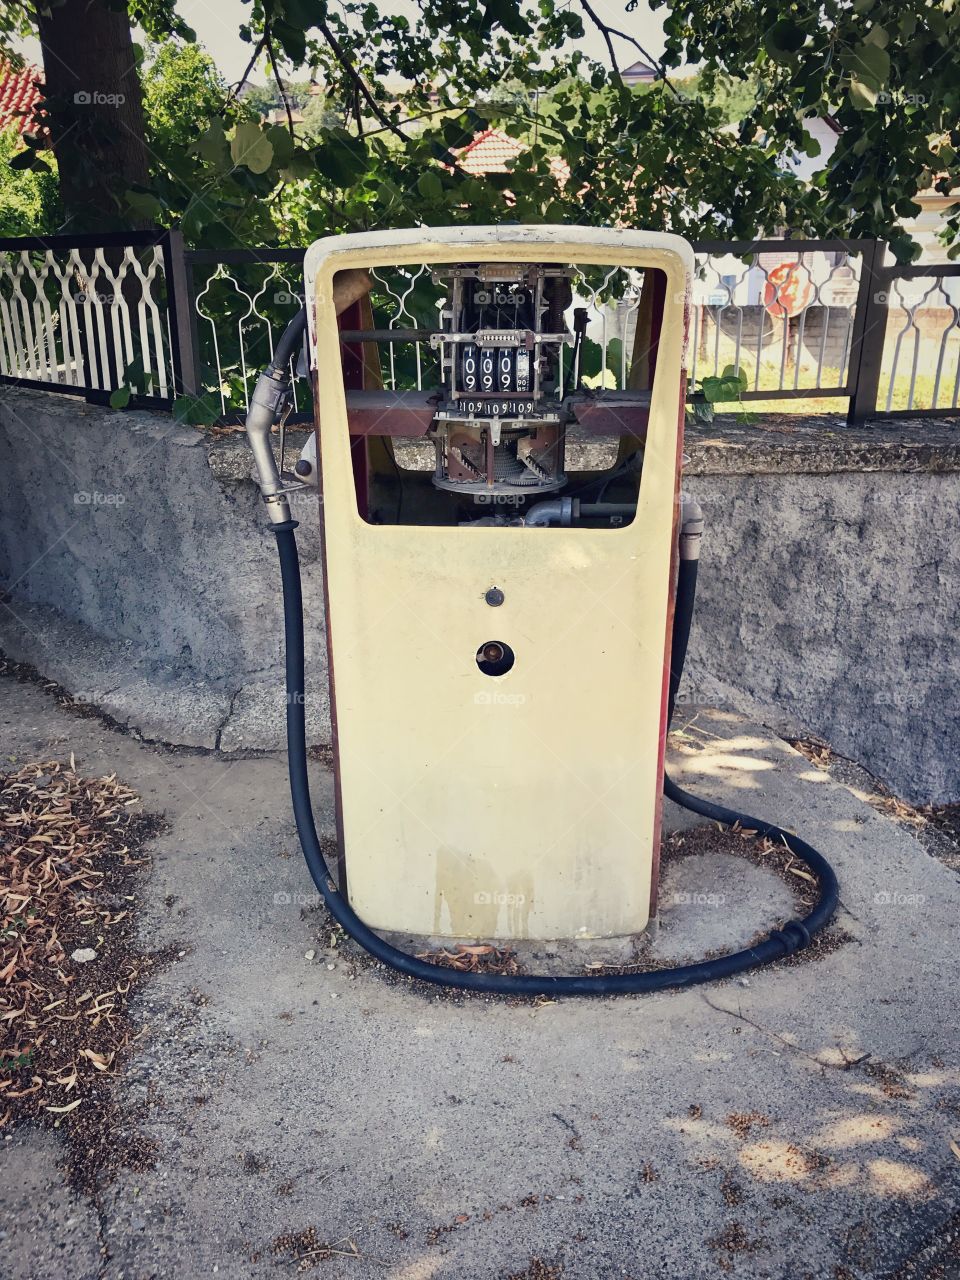 Vintage Fuel dispenser